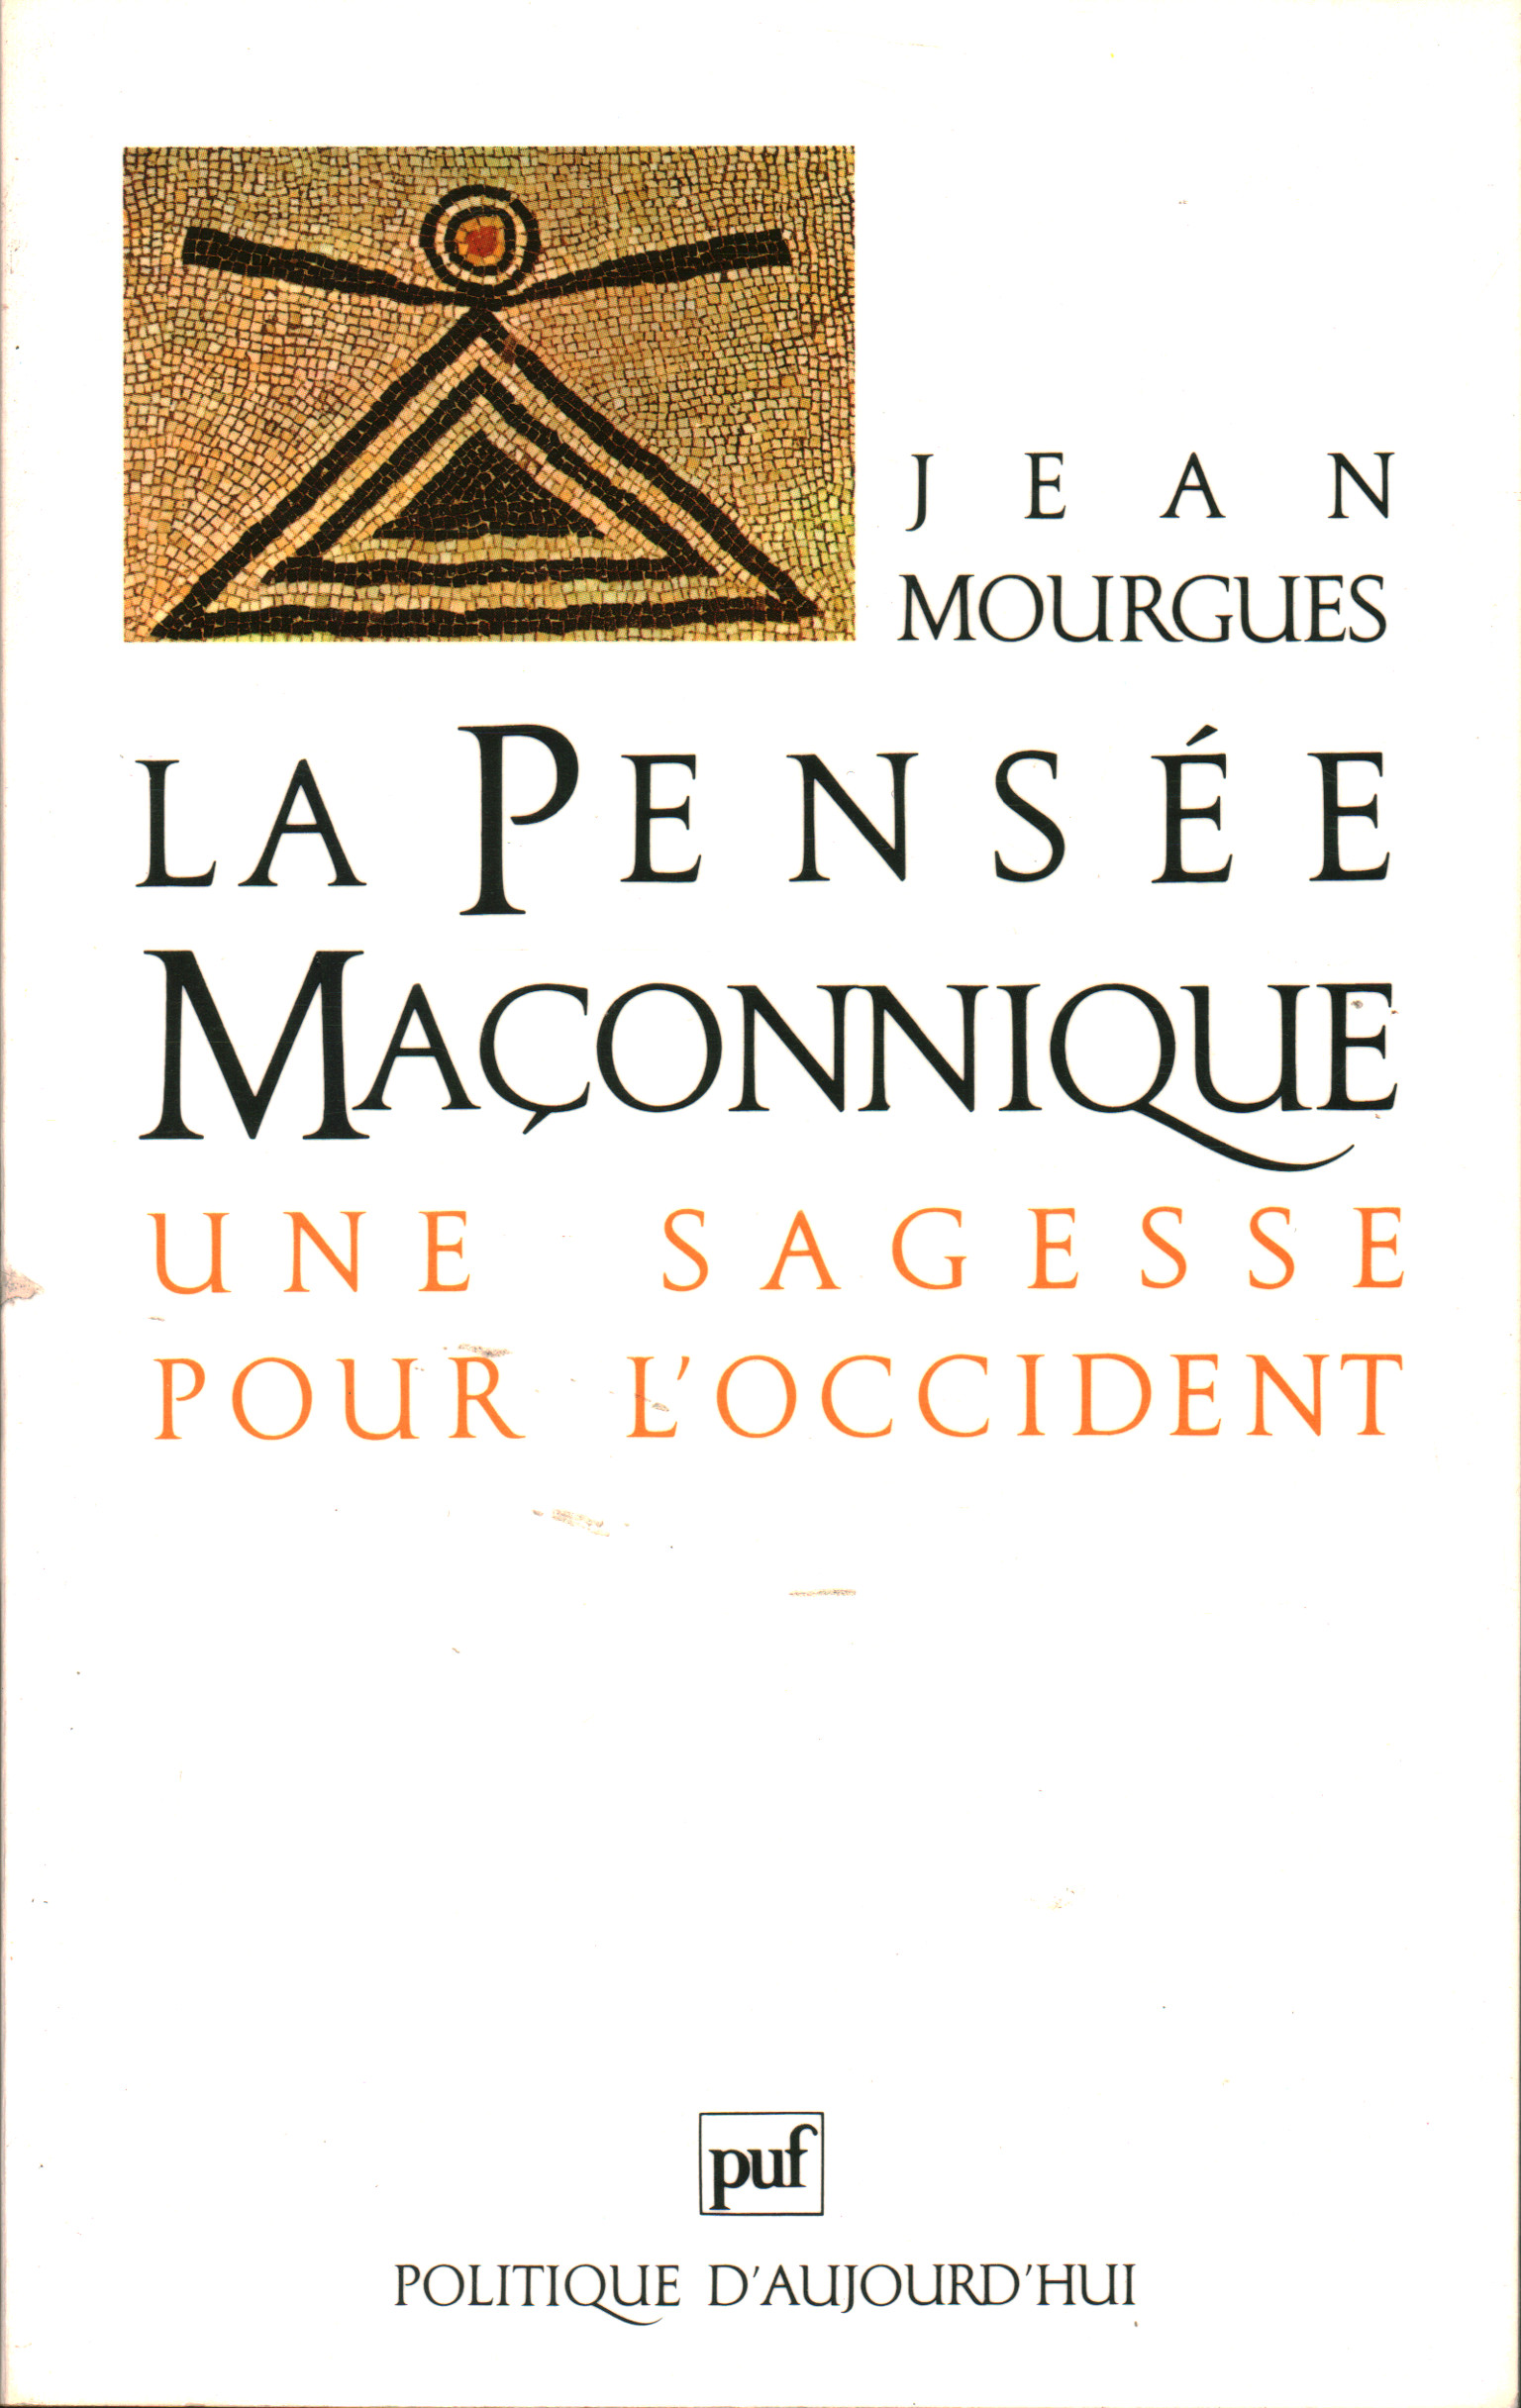 La pensée maçonnique, Jean Mourgues